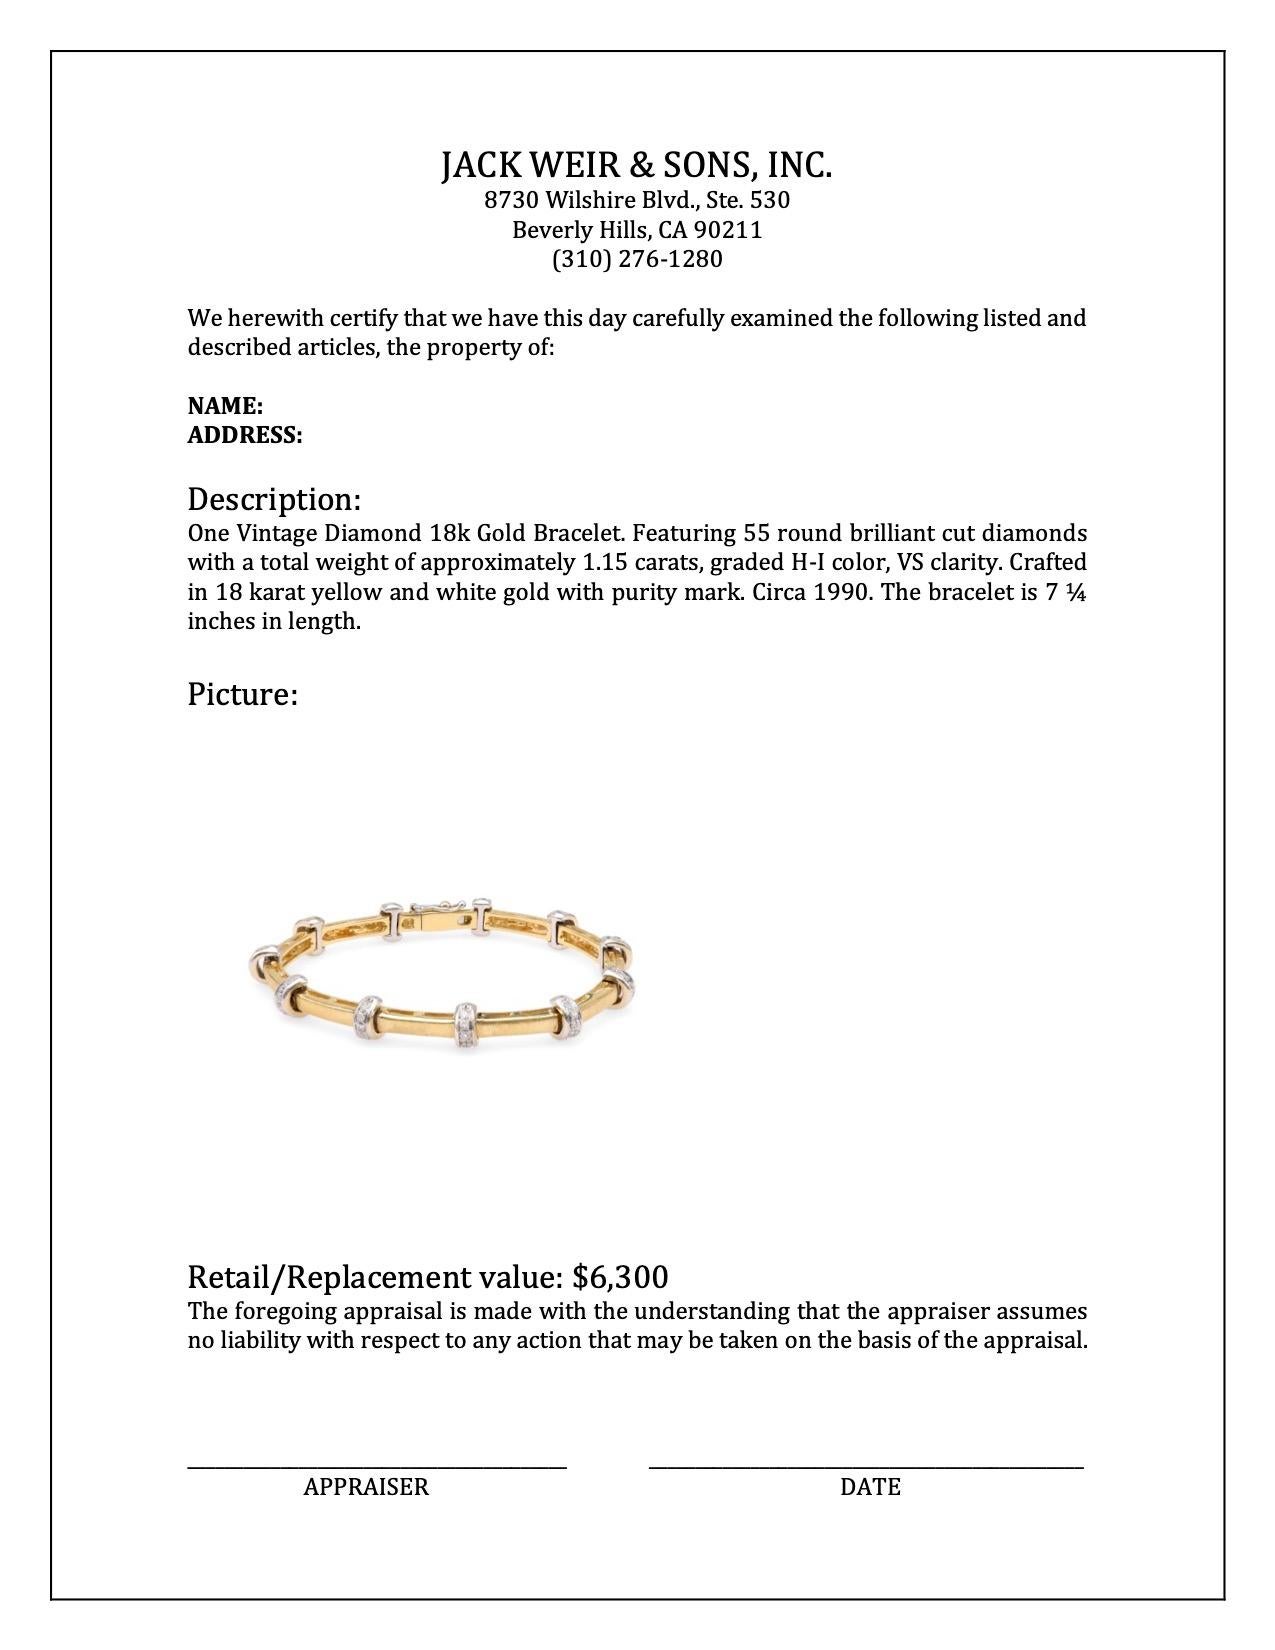 Women's or Men's Vintage Diamond 18k Gold Bracelet